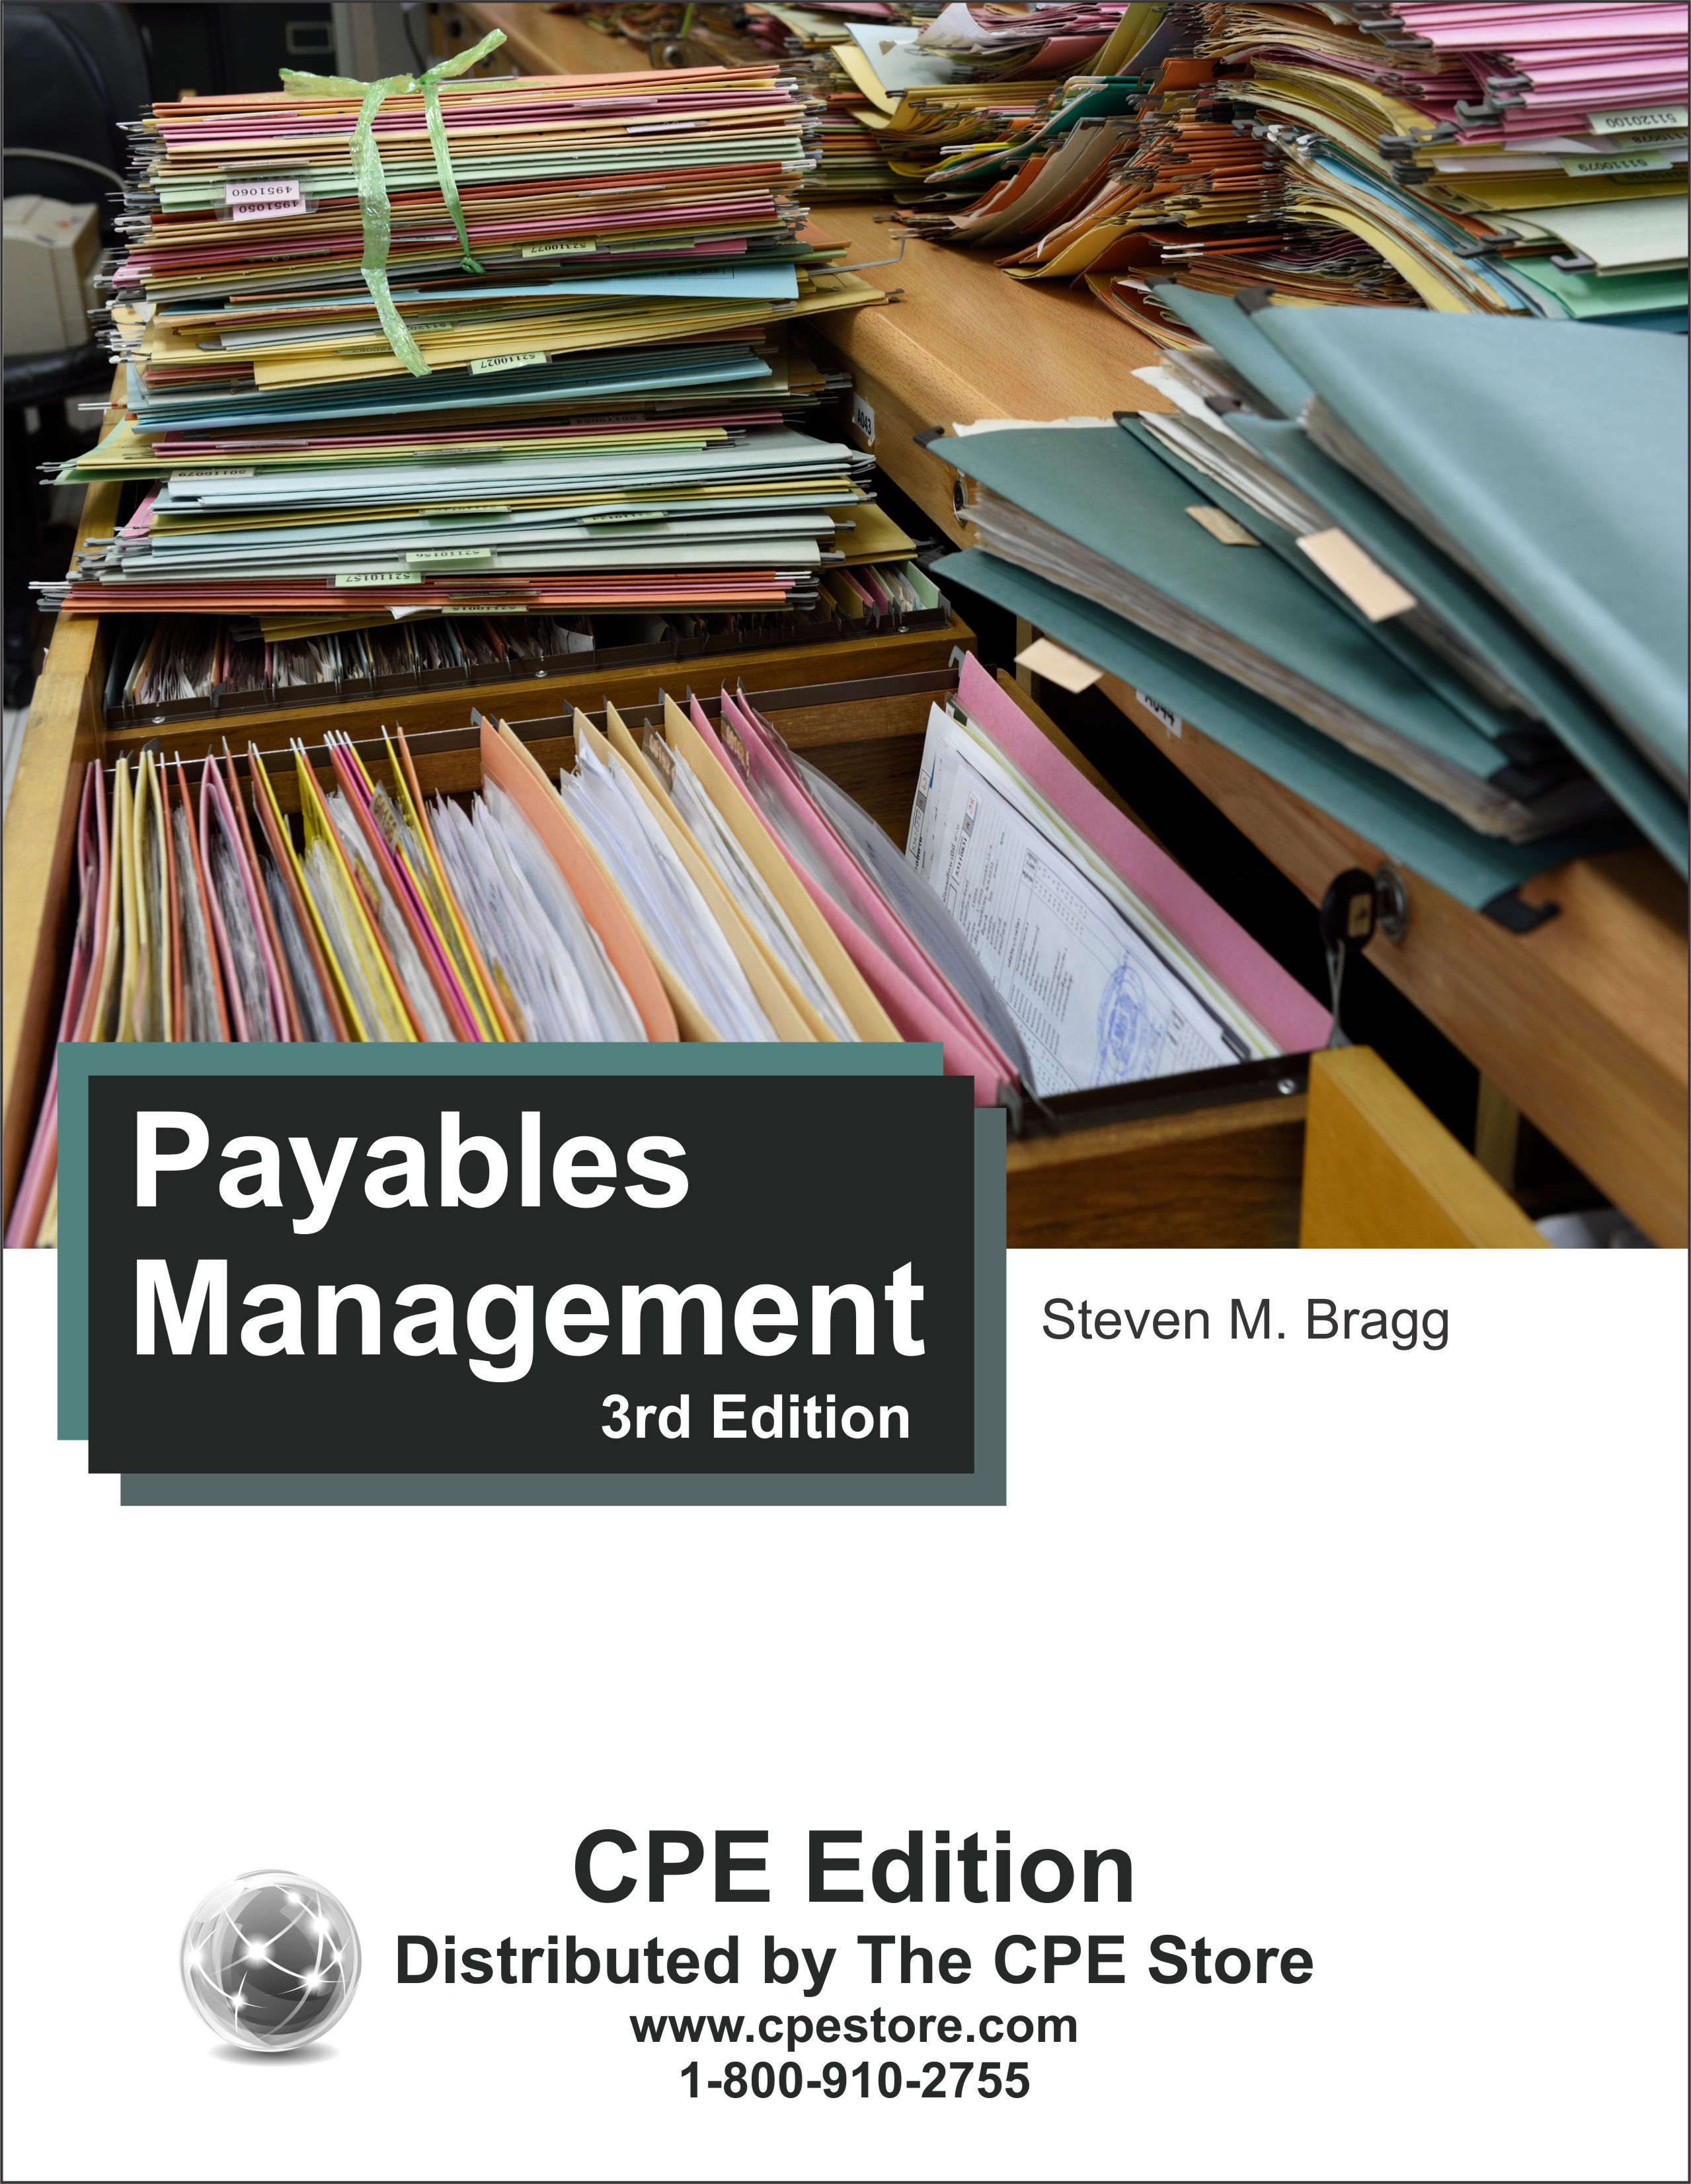 Payables Management